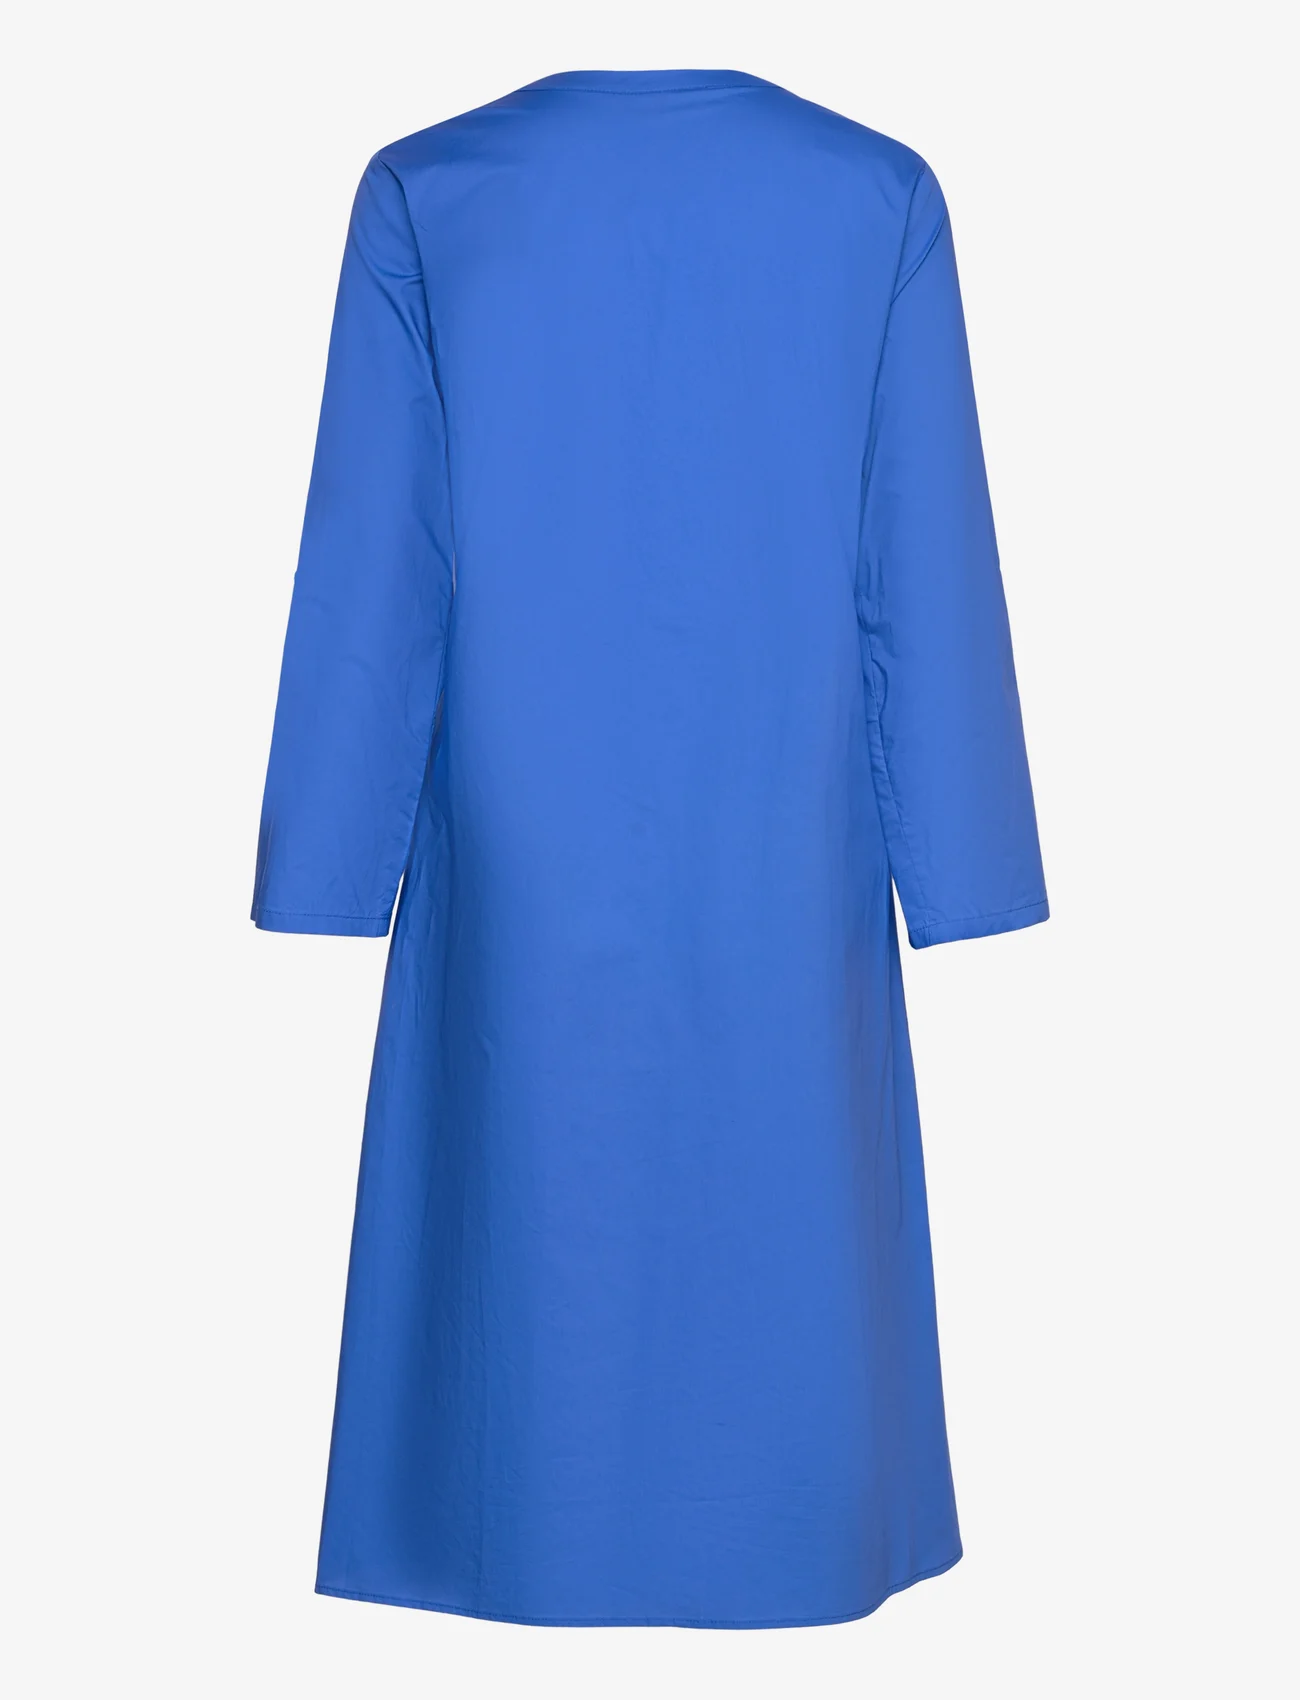 FREE/QUENT - FQMALAY-DRESS - marškinių tipo suknelės - nebulas blue - 1